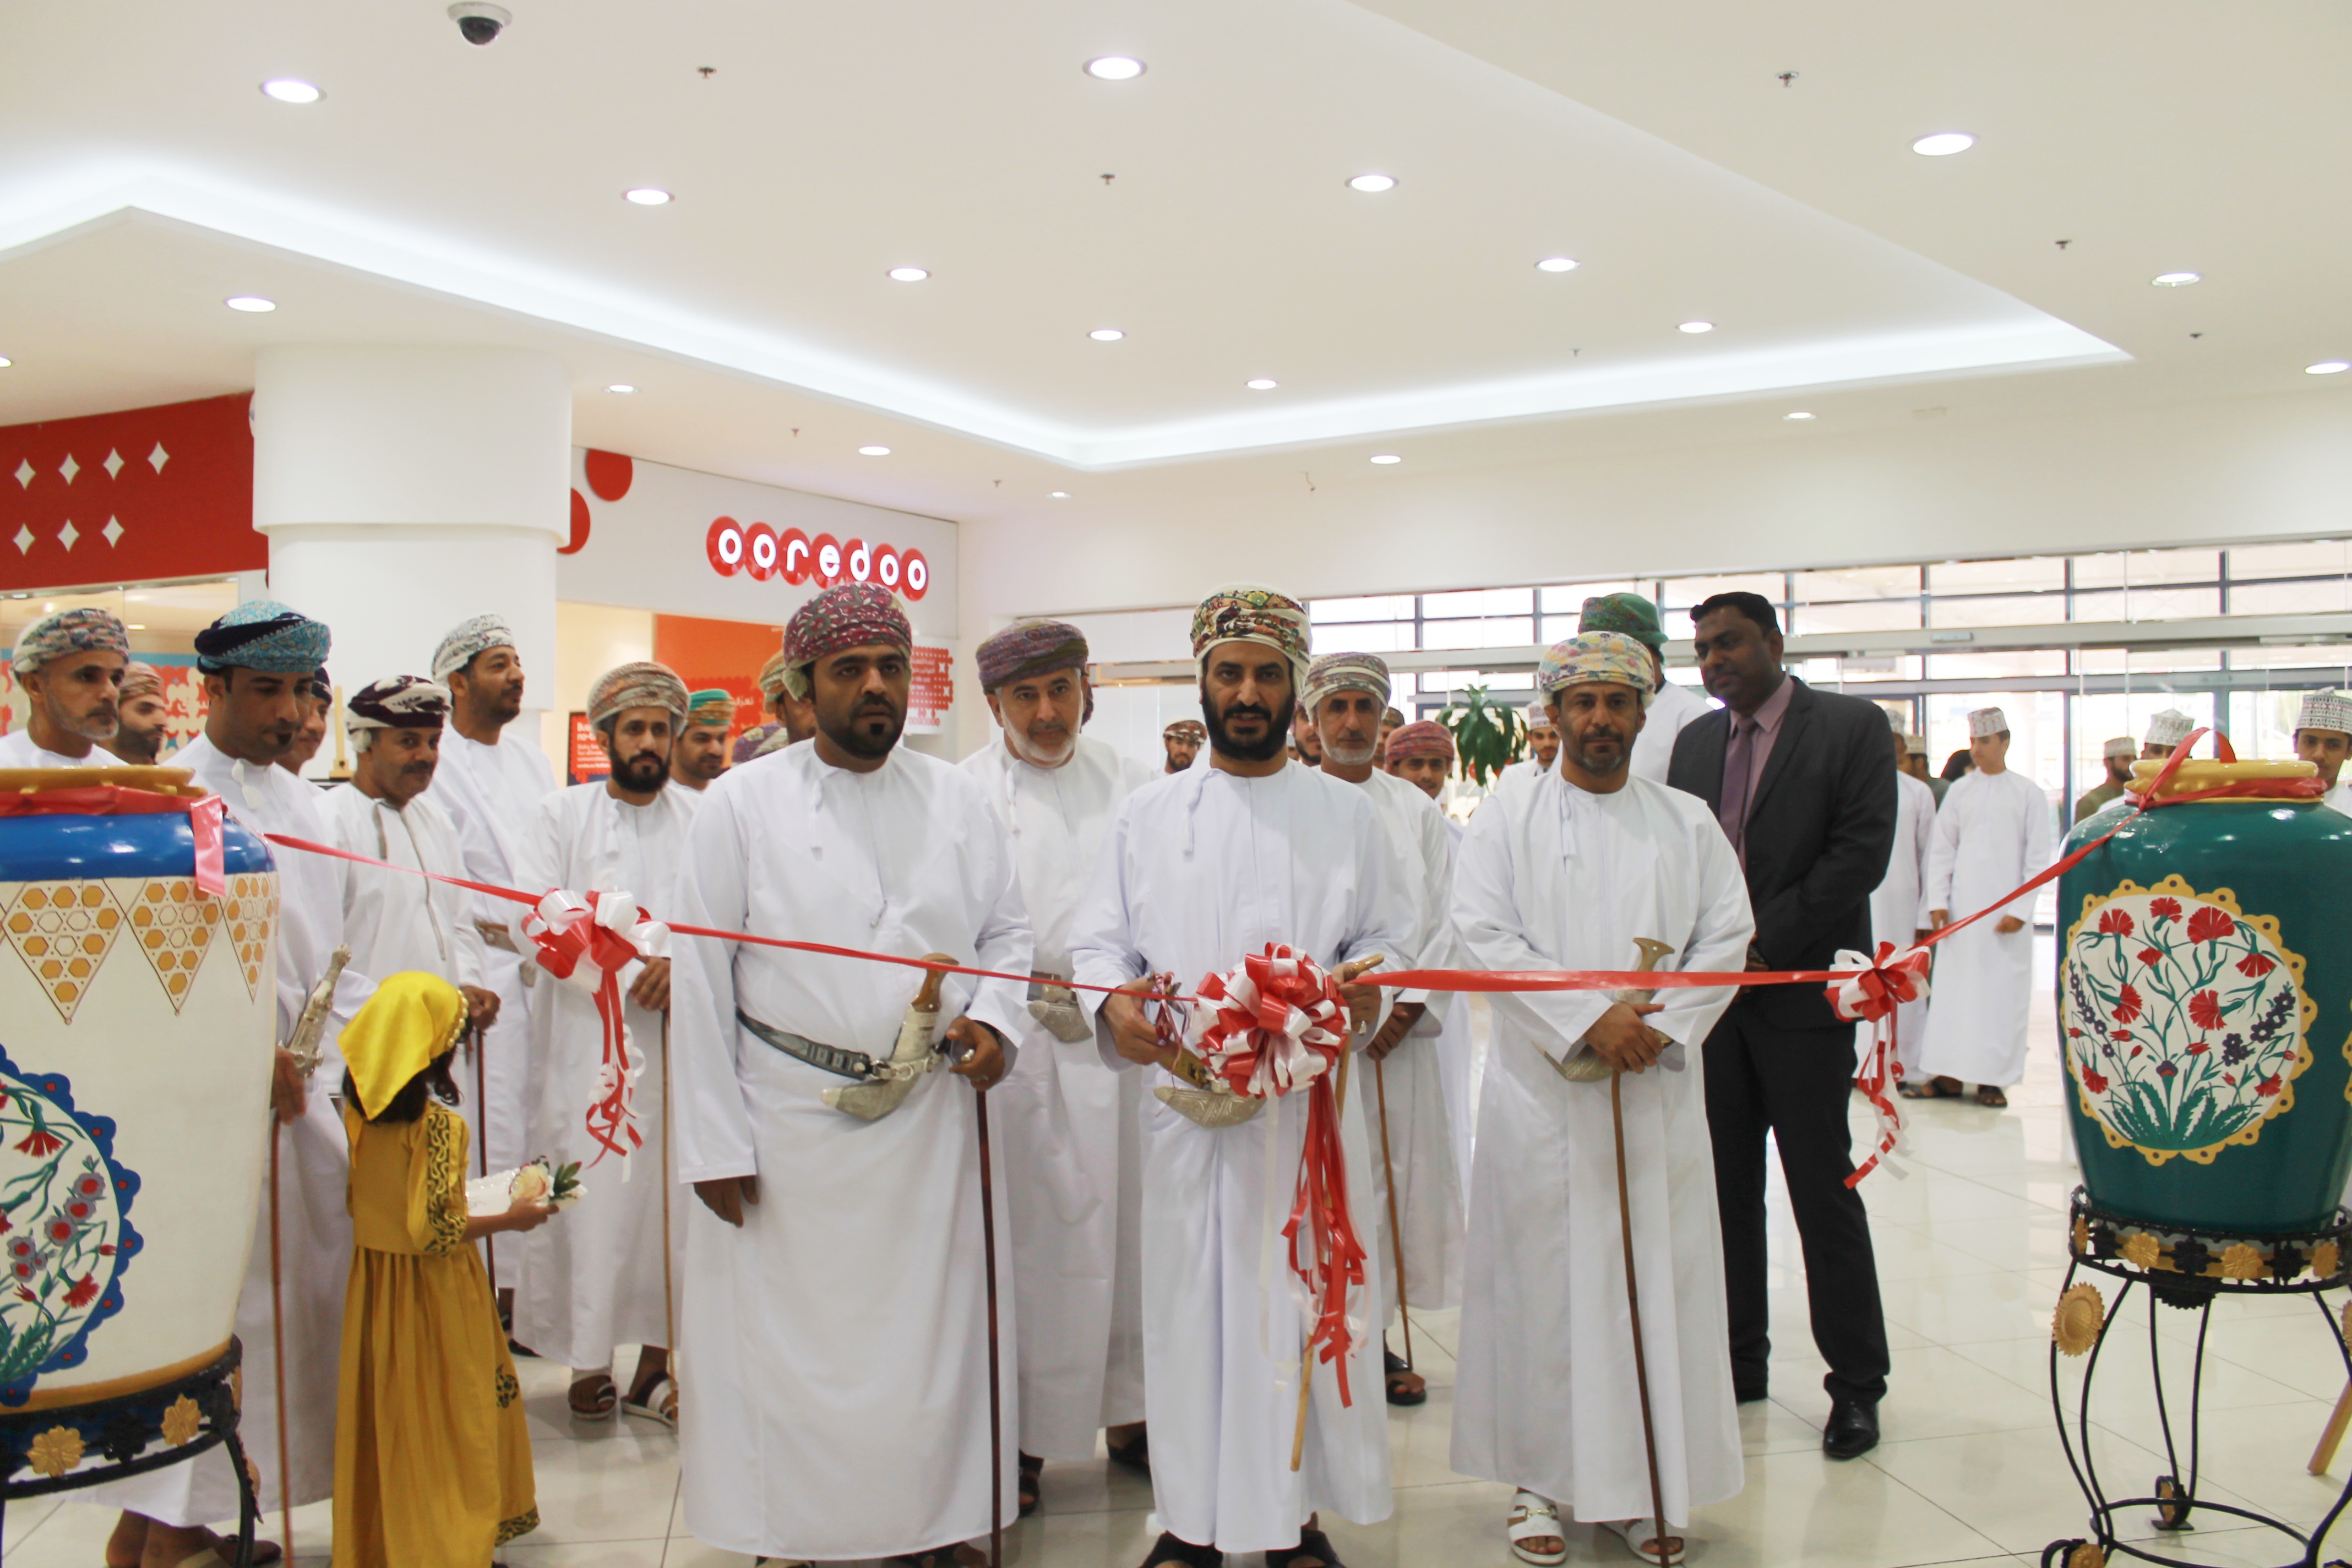 افتتاح معرض "خزاف عمان" بولاية نزوى